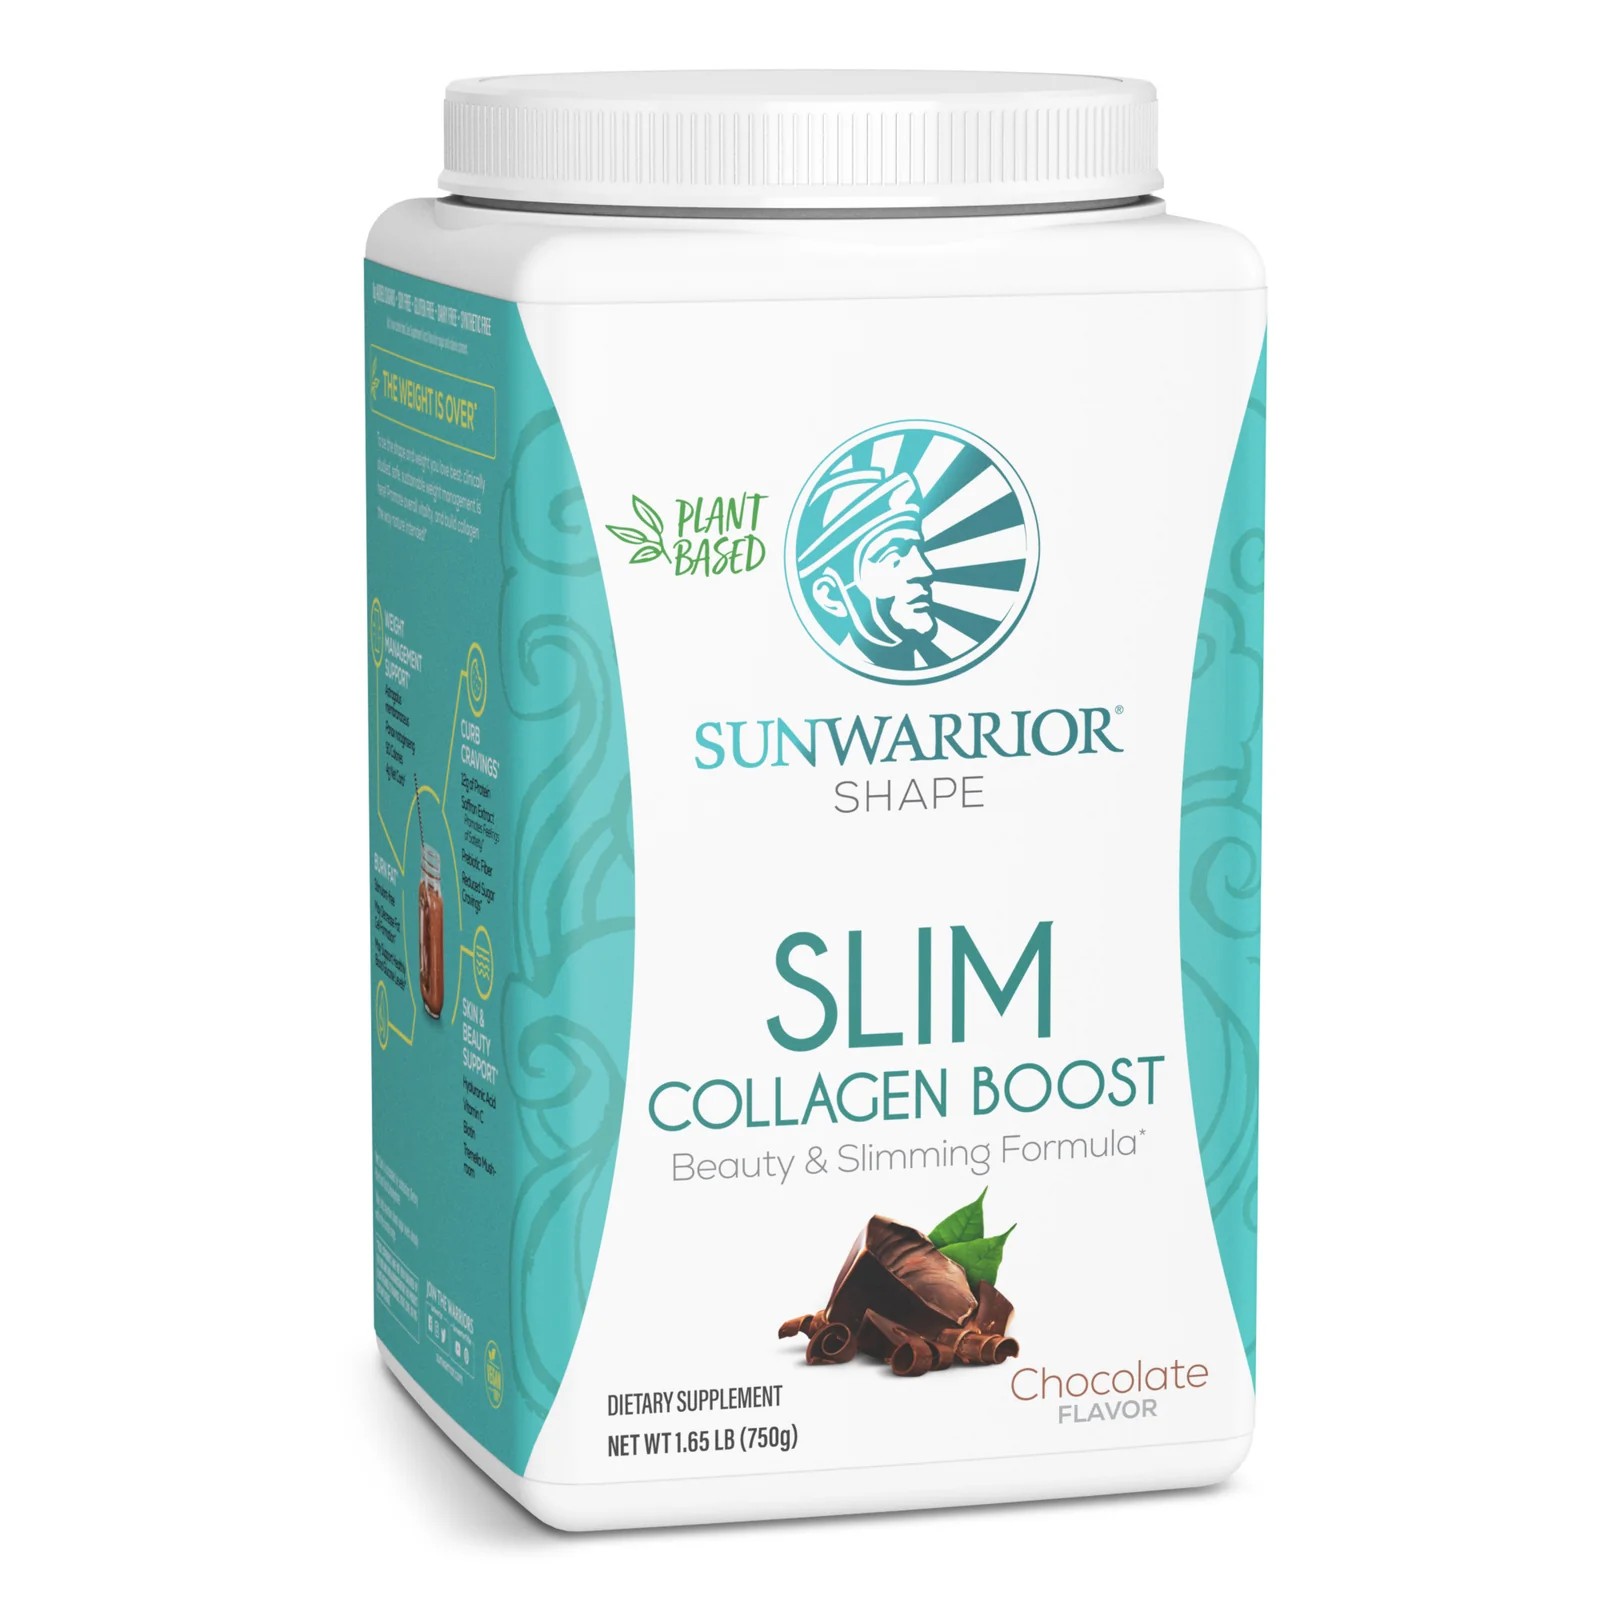 Sunwarrior Slim Collagen Boost 6